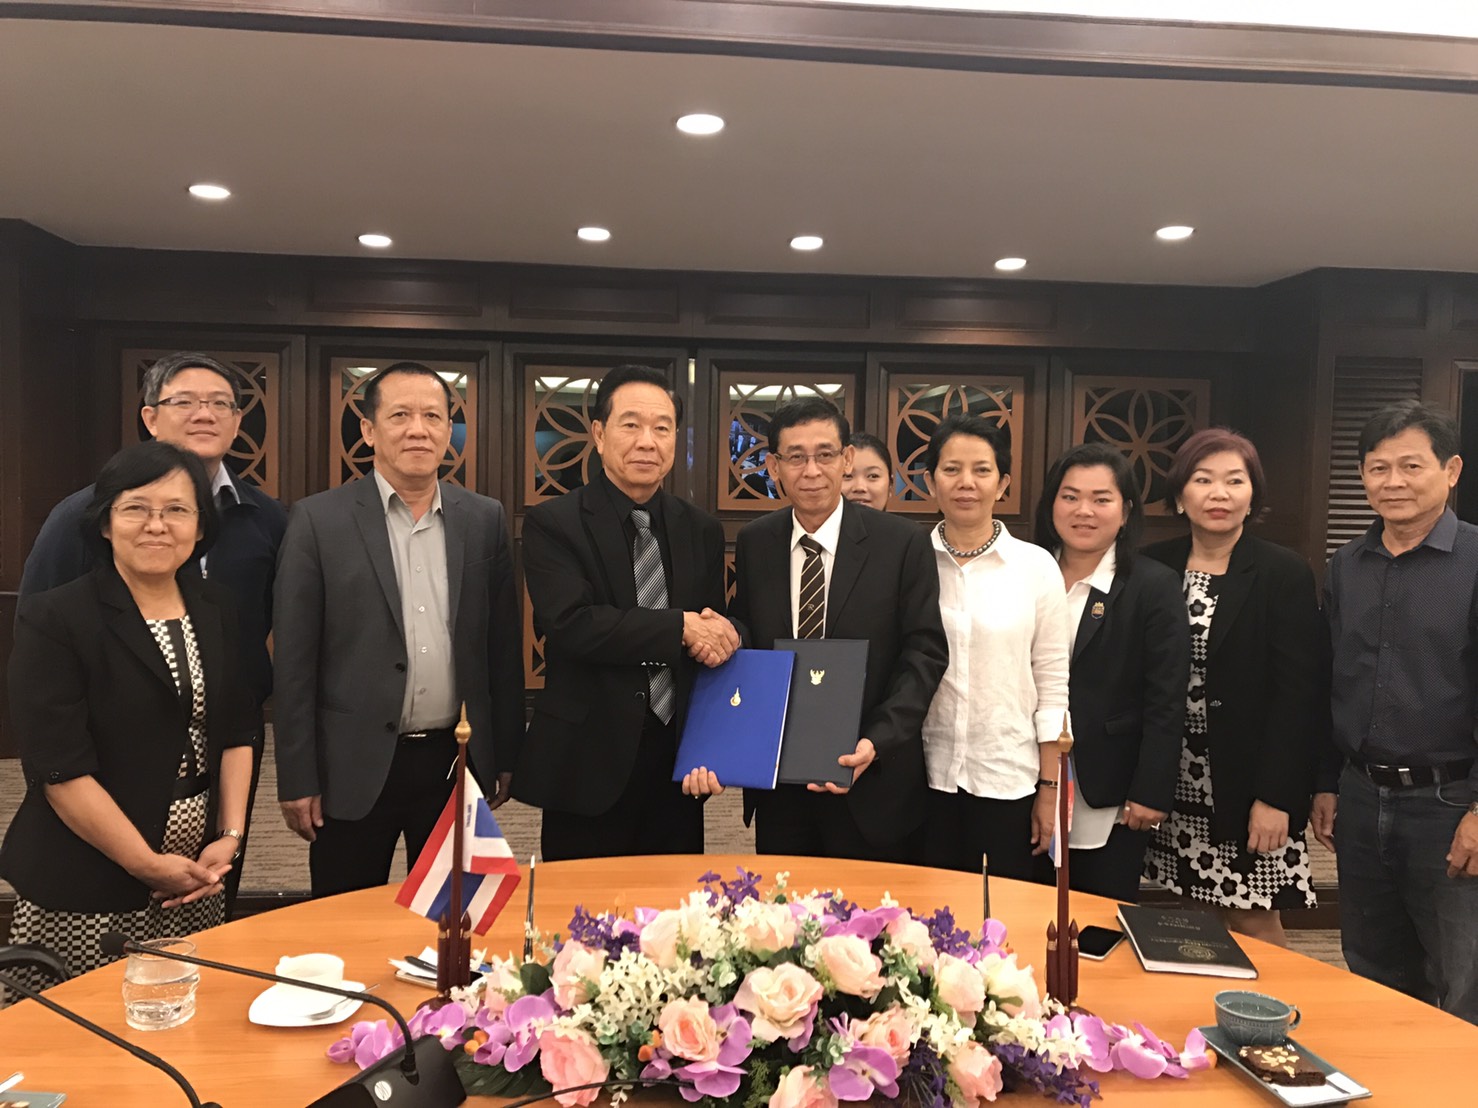 พิธีลงนามในบันทึกข้อตกลงทางวิชาการ (MOU) ร่วมกับ National Polytechnic Institute of Cambodia ประเทศกัมพูชา